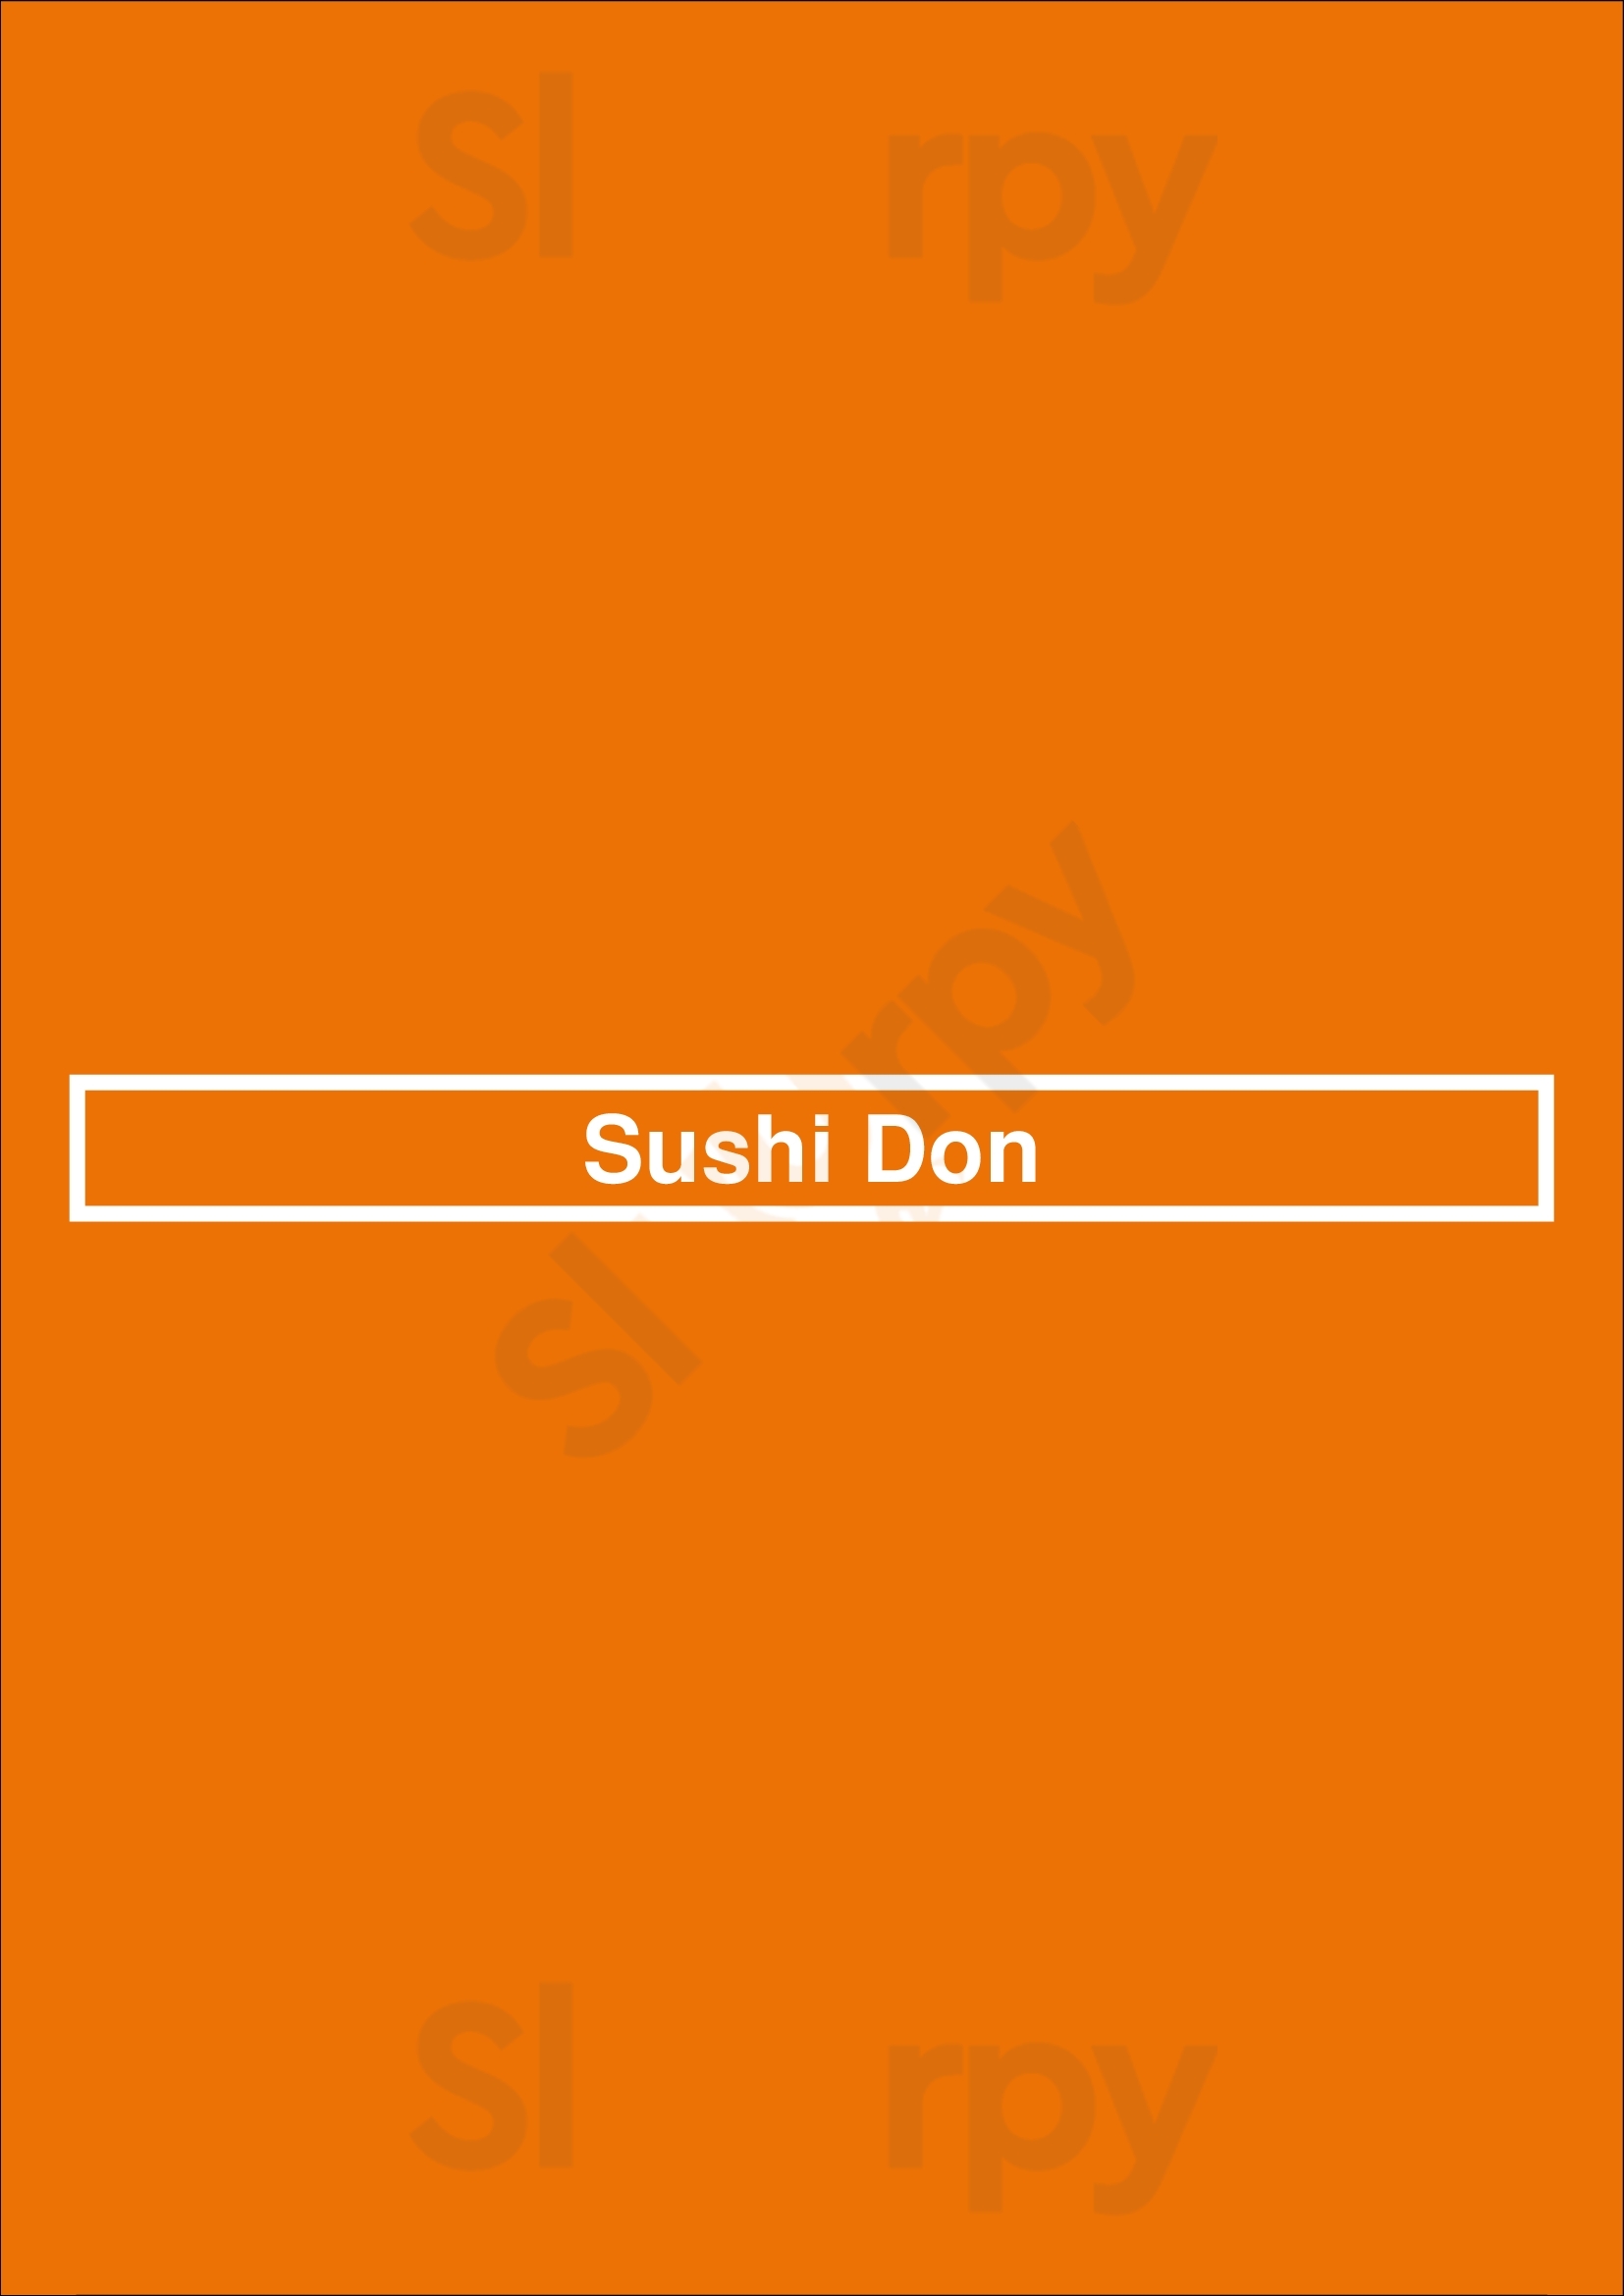 Sushi Don Los Angeles Menu - 1